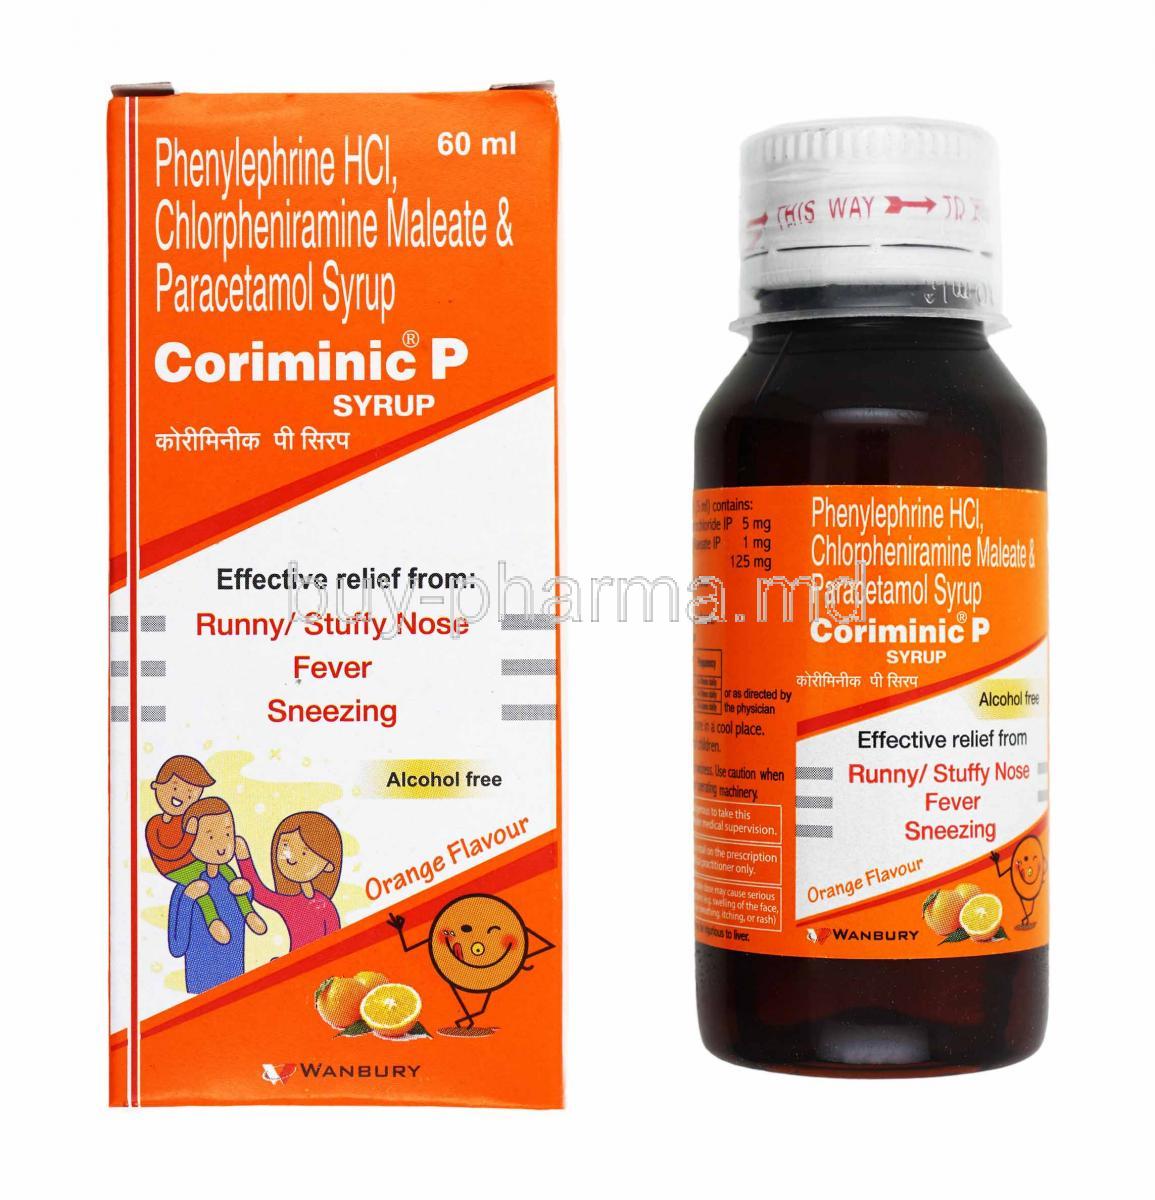 Coriminic P Syrup, Chlorpheniramine, Paracetamol and Phenylephrine box and bottle